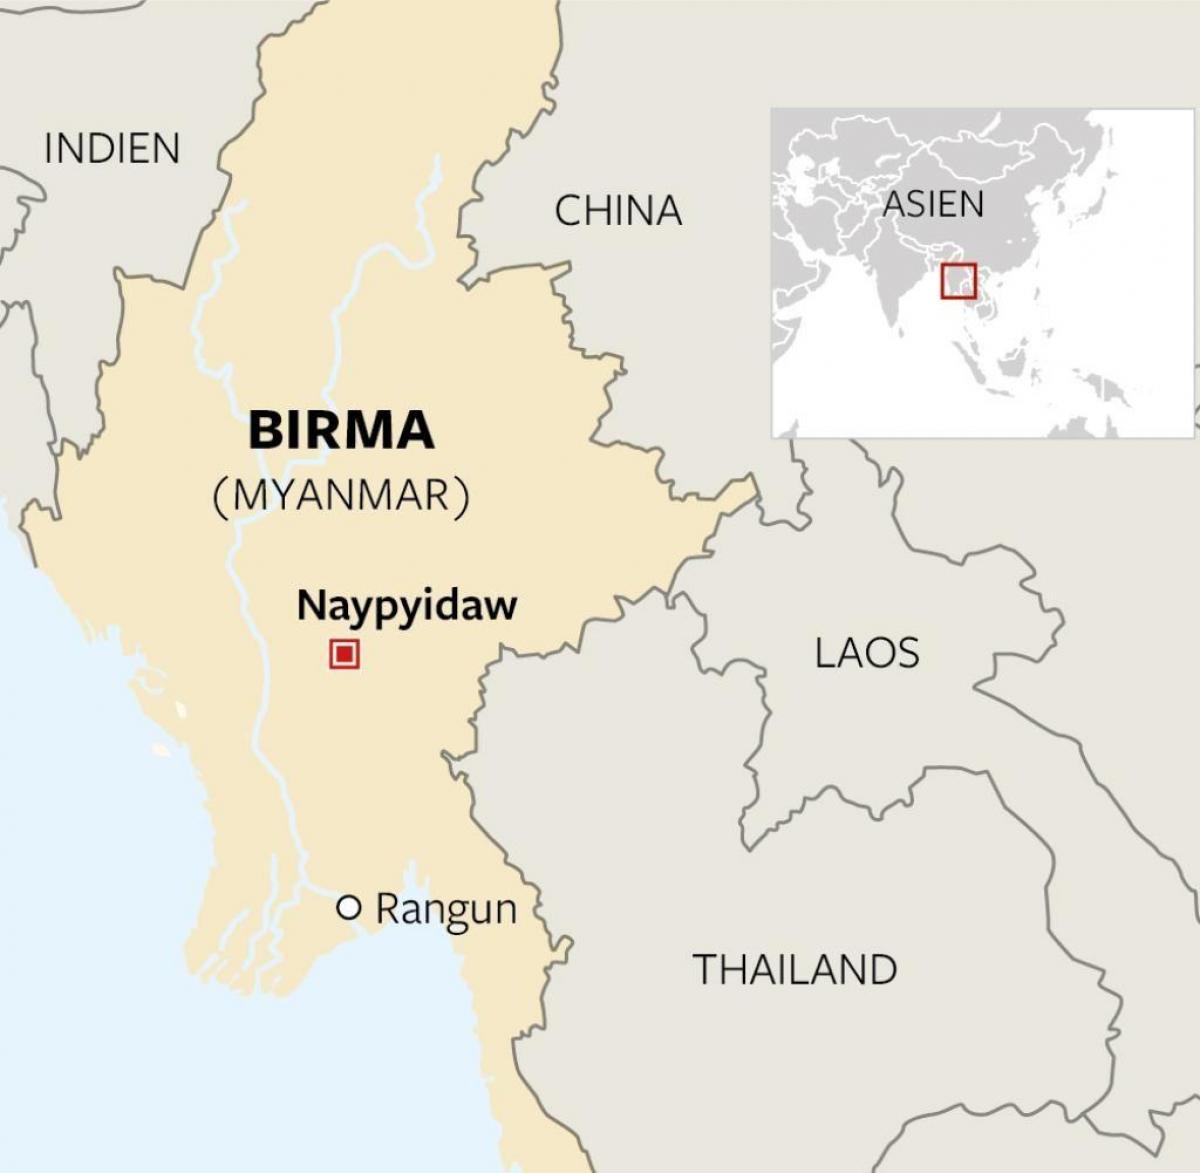 znaleźć Birma na mapie świata